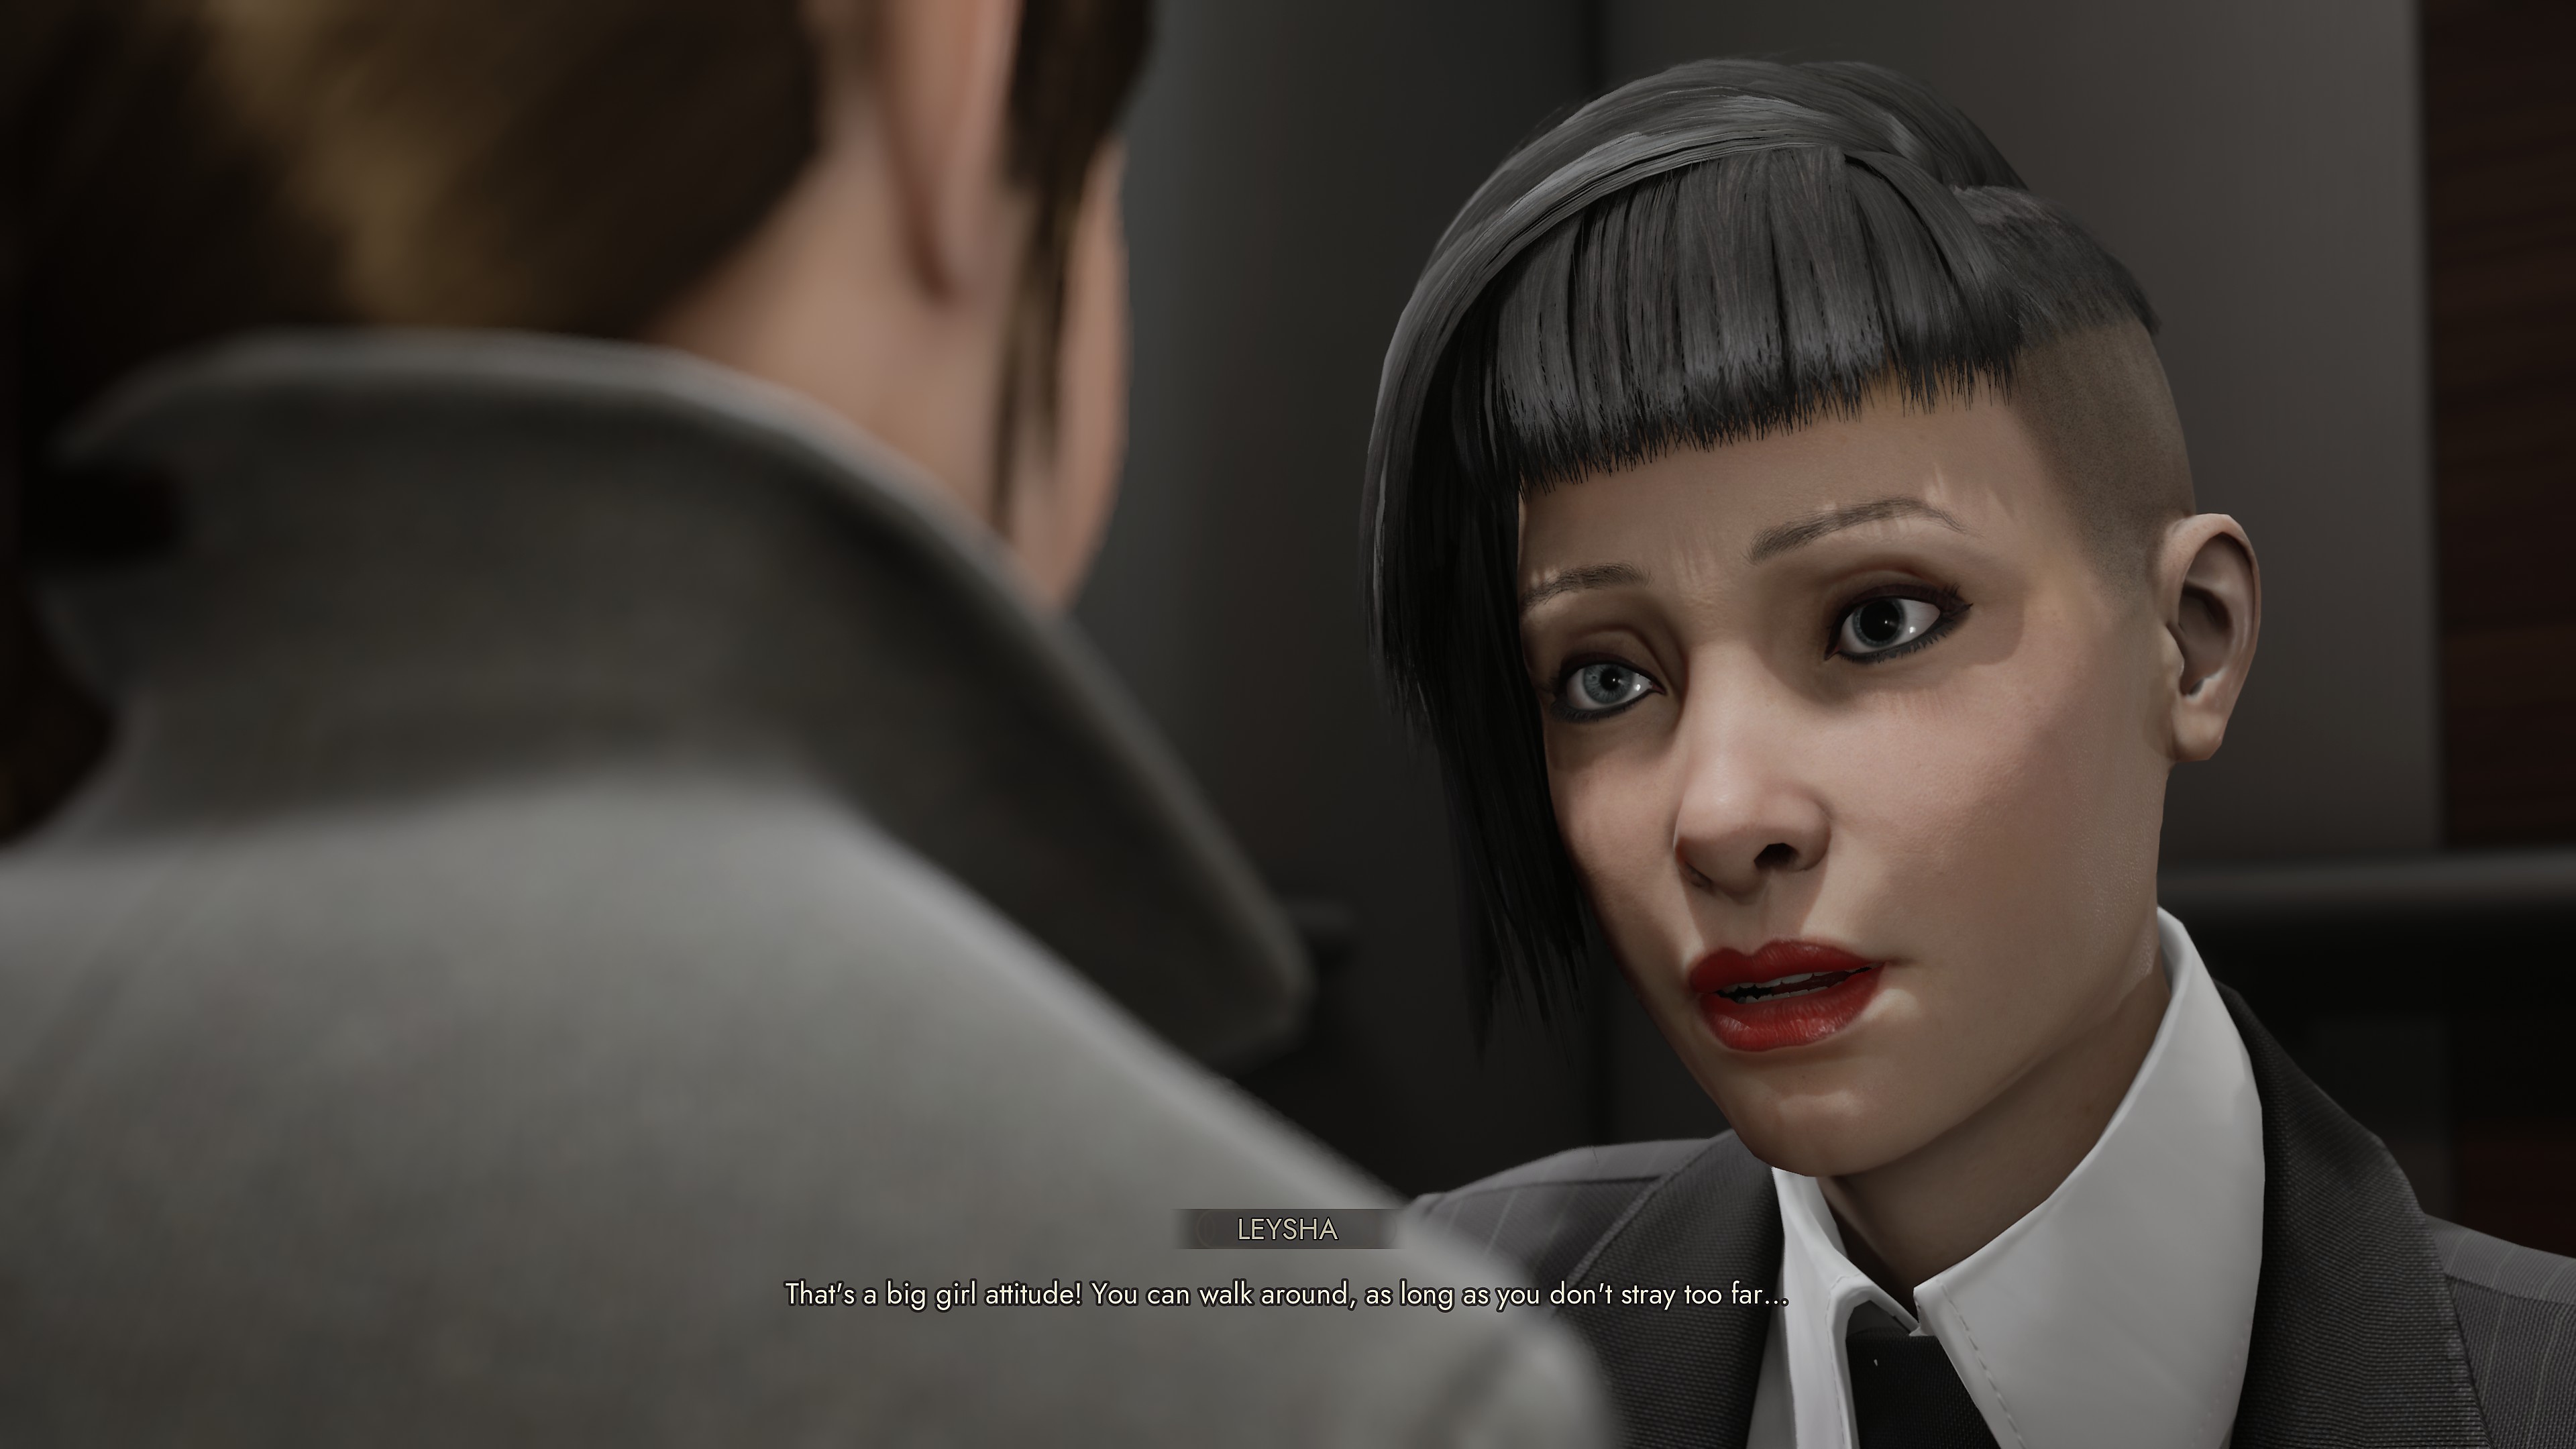 Captura de pantalla de Vampire: The Masquerade - Swansong que muestra a dos personajes interactuando